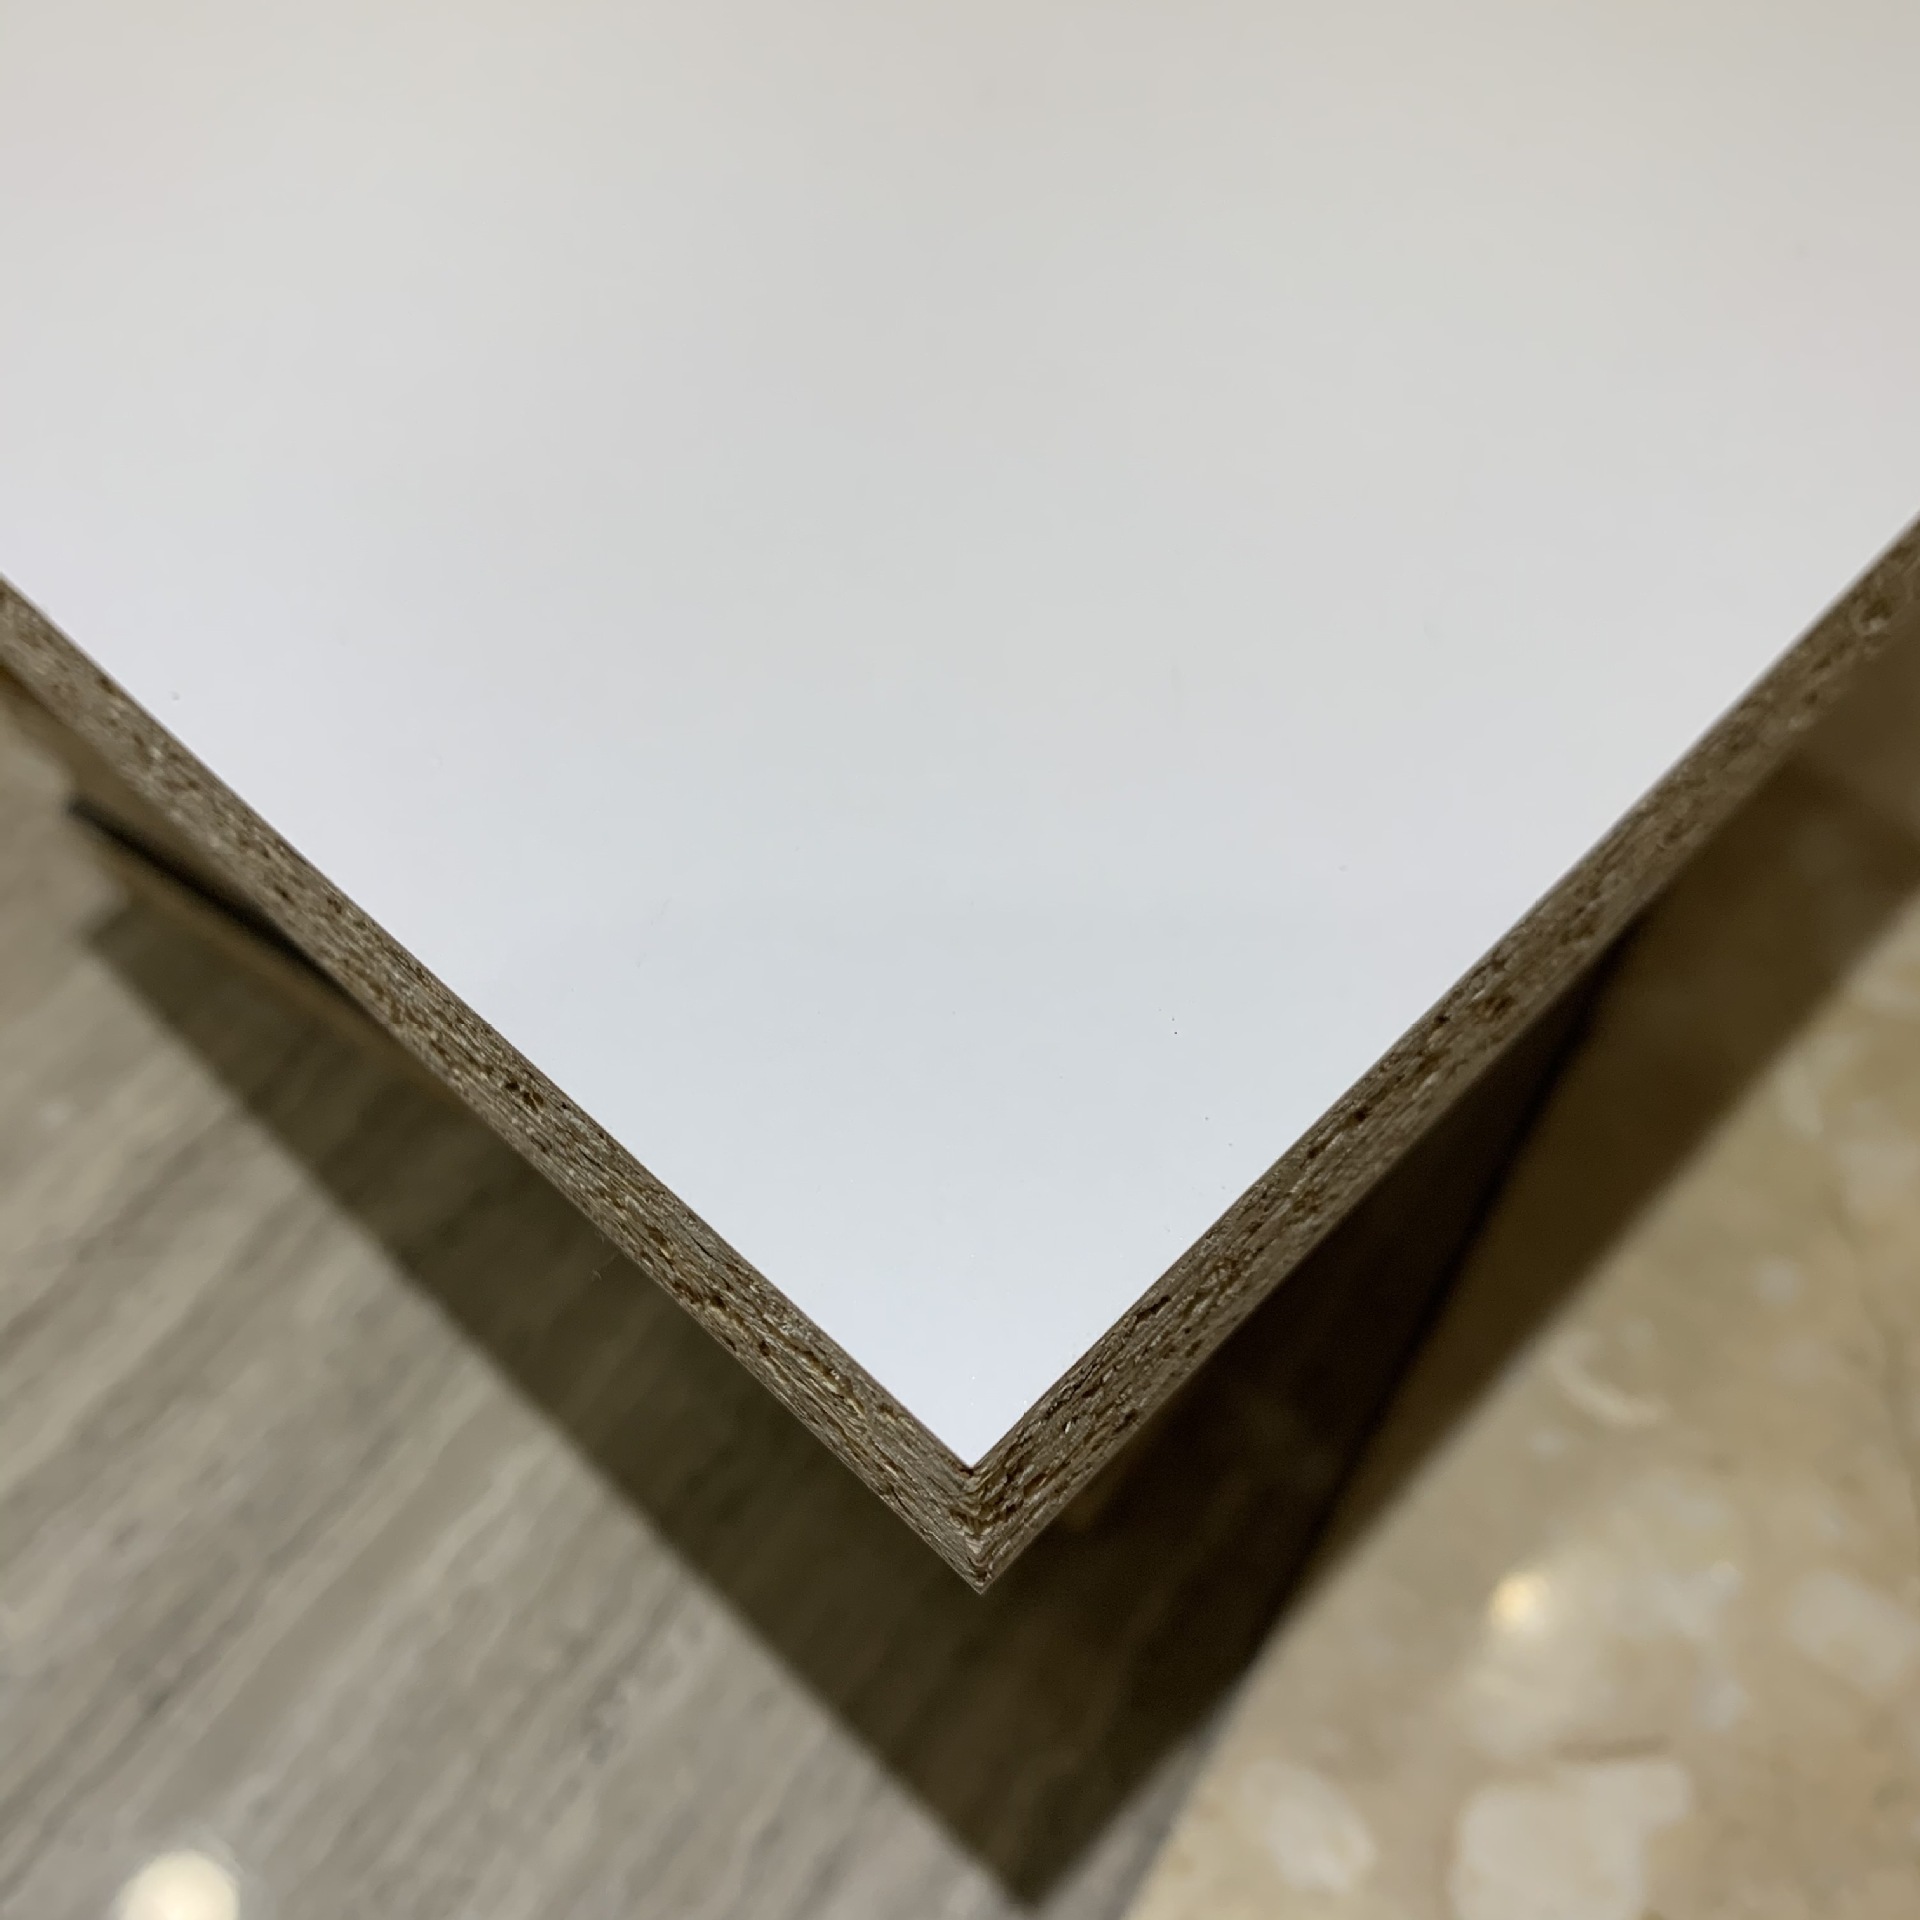 家裝裝飾打印板材膠合板刨花板多層板顆粒板免漆板OSB木板